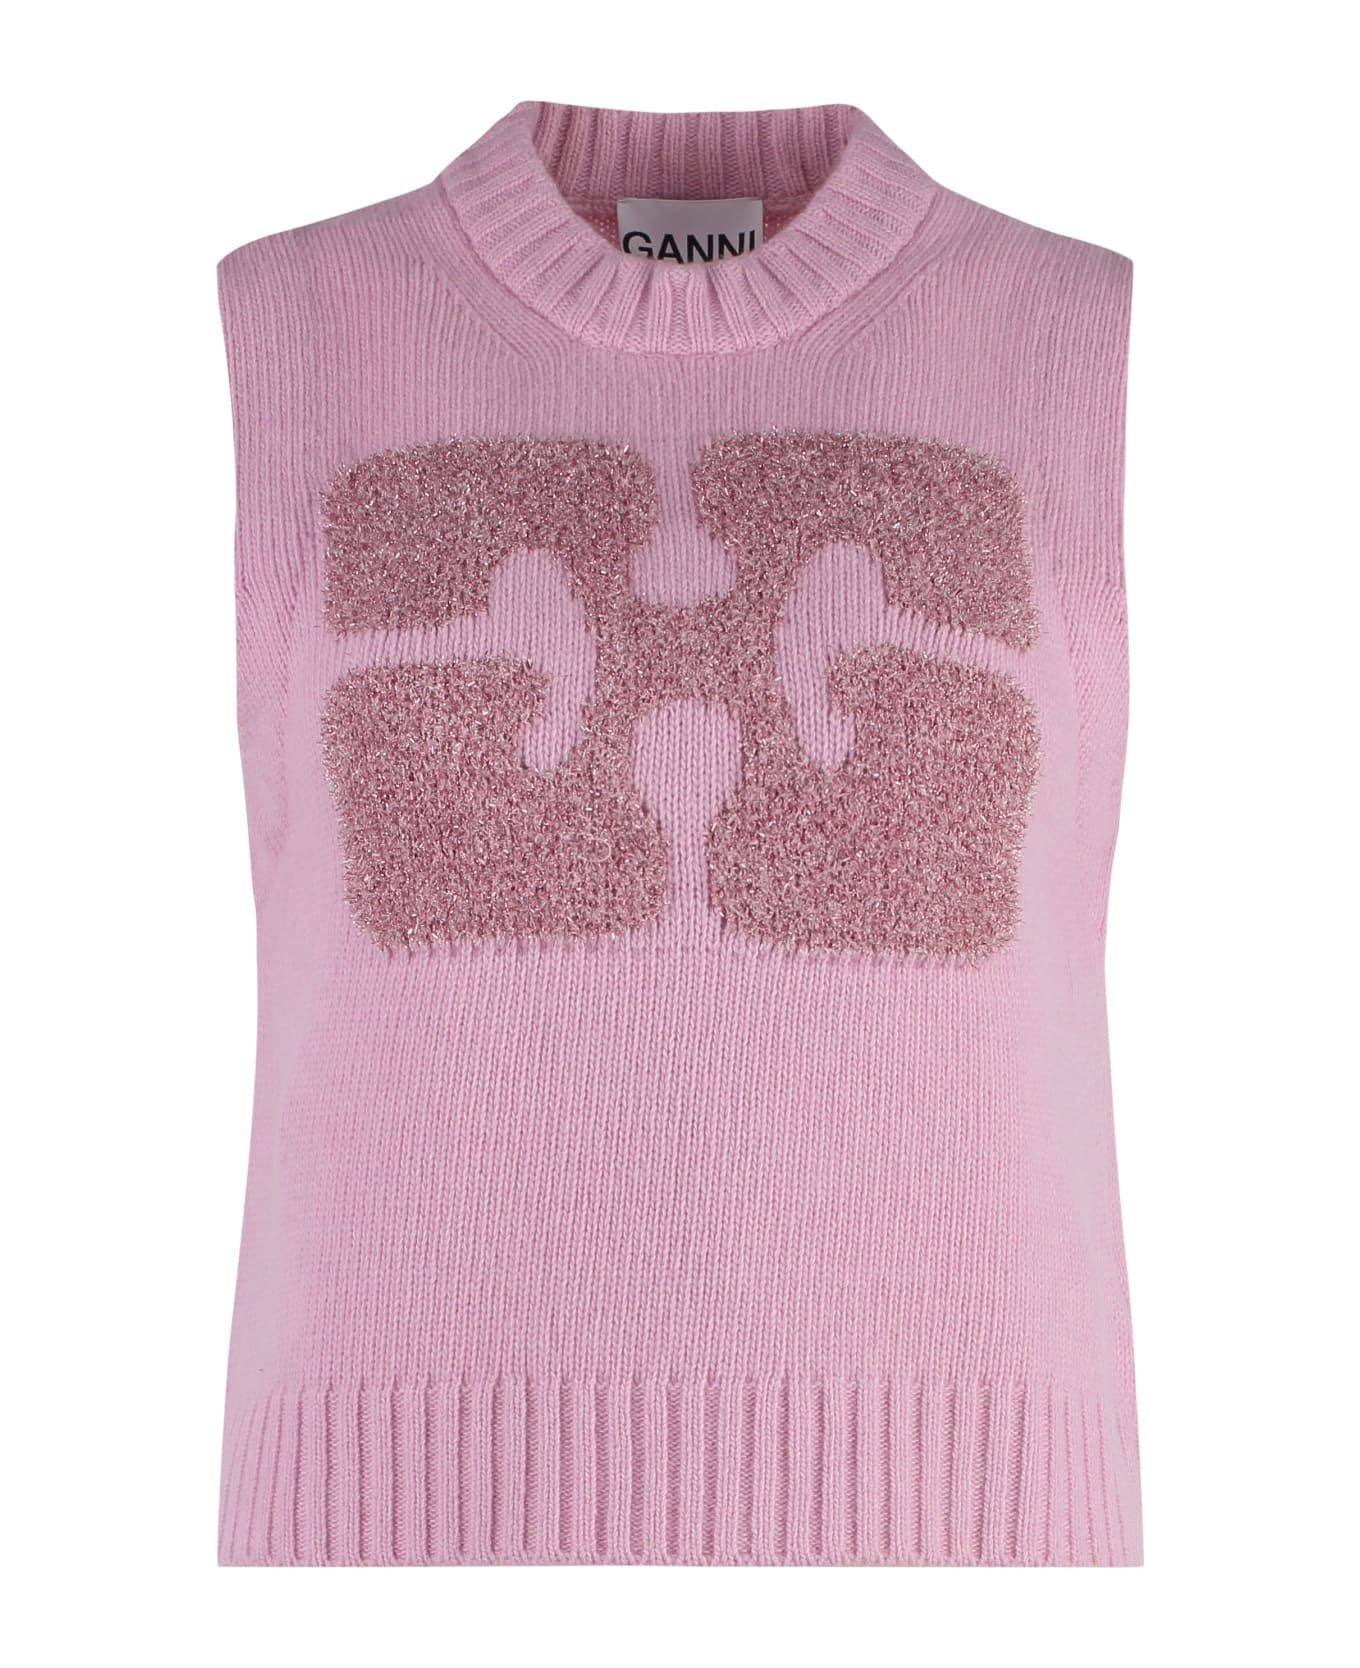 Ganni Wool Blend Knitted Front Vest - Pink